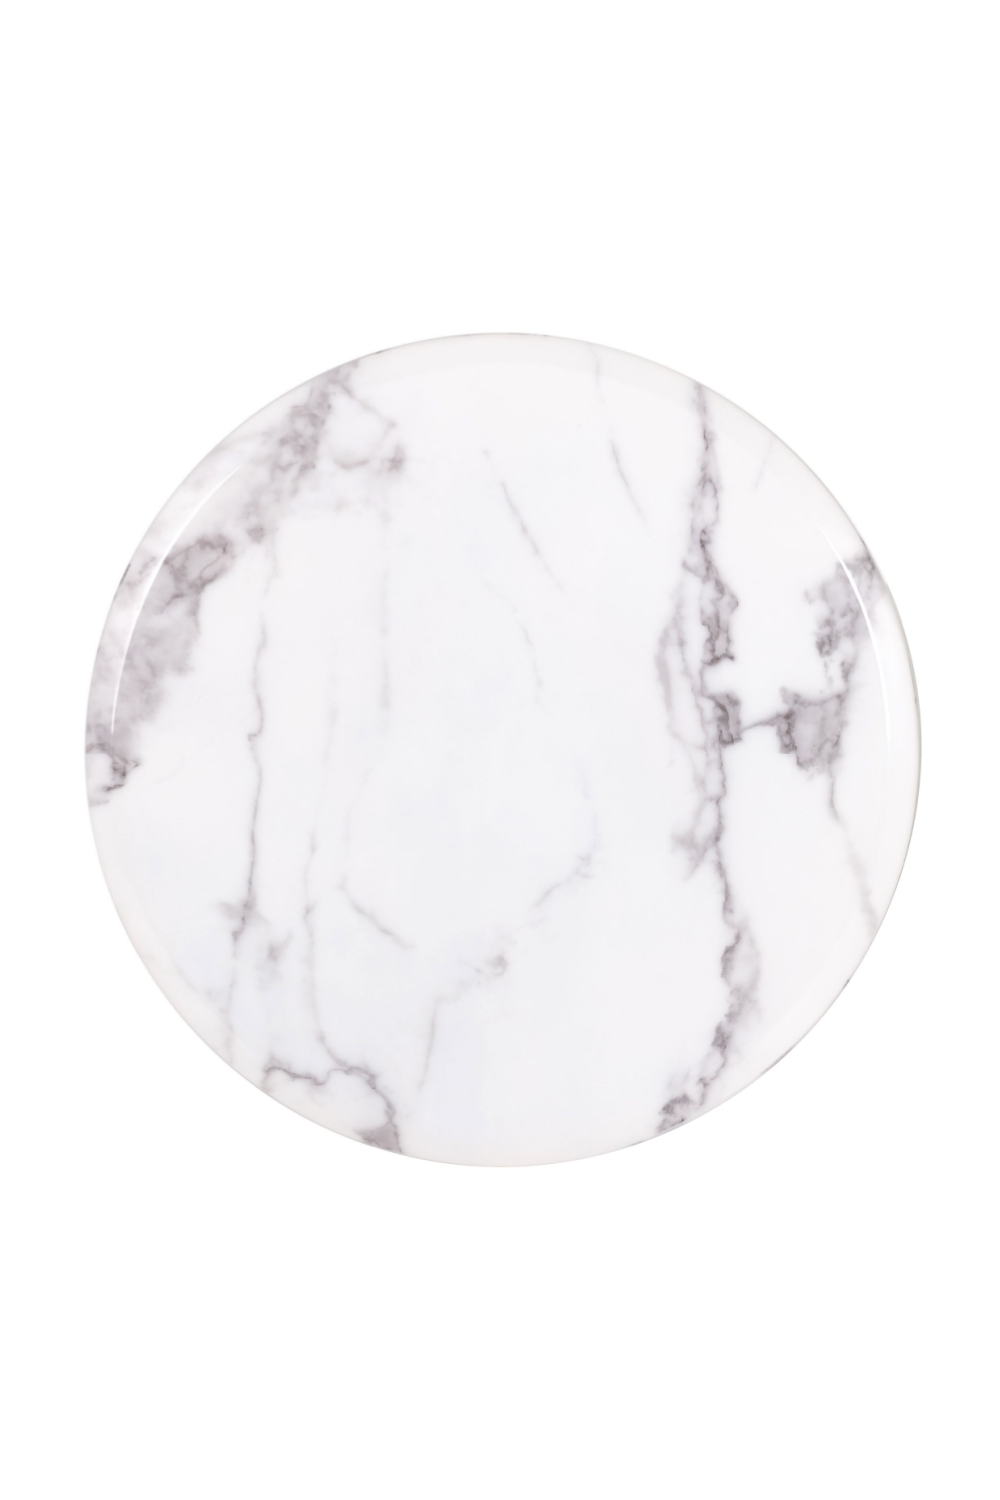 Round White Marble Pedestal Side Table | OROA Degas | Oroa.com